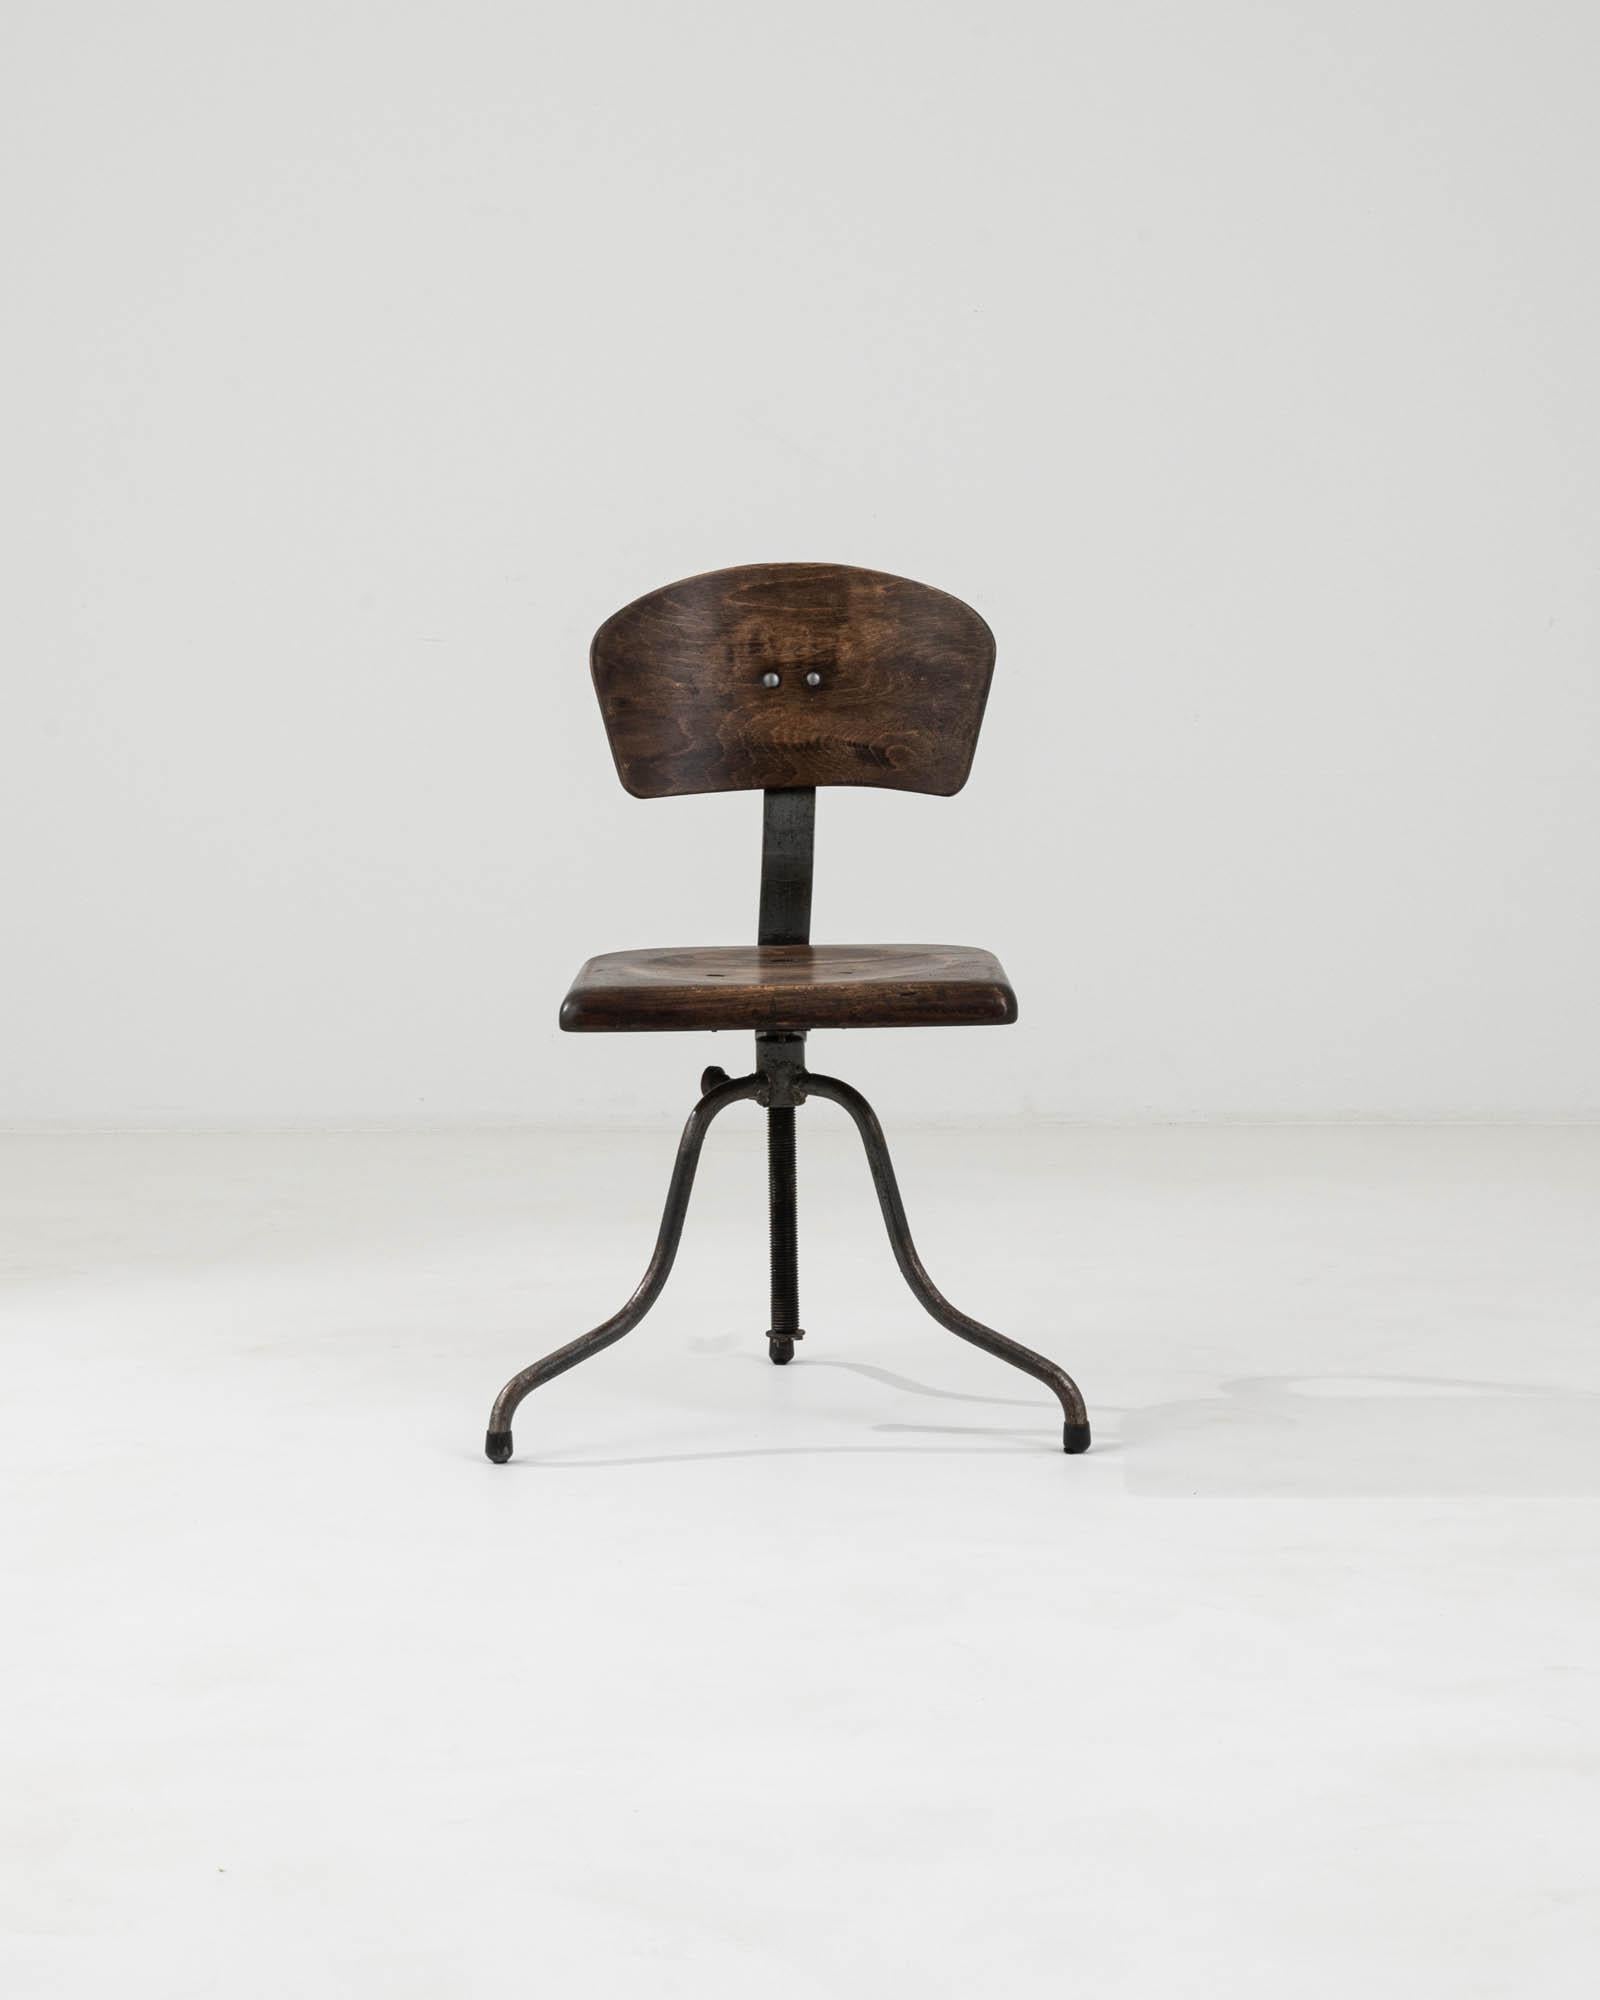 Dieser Czechia Industrial Lifting & Swivel Chair aus dem 20. Jahrhundert ist ein Stück, das Form und Funktion perfekt miteinander verbindet. Sitz und Rückenlehne des Stuhls sind aus Massivholz gefertigt, wobei jedes Teil eine dunkle, wirbelnde